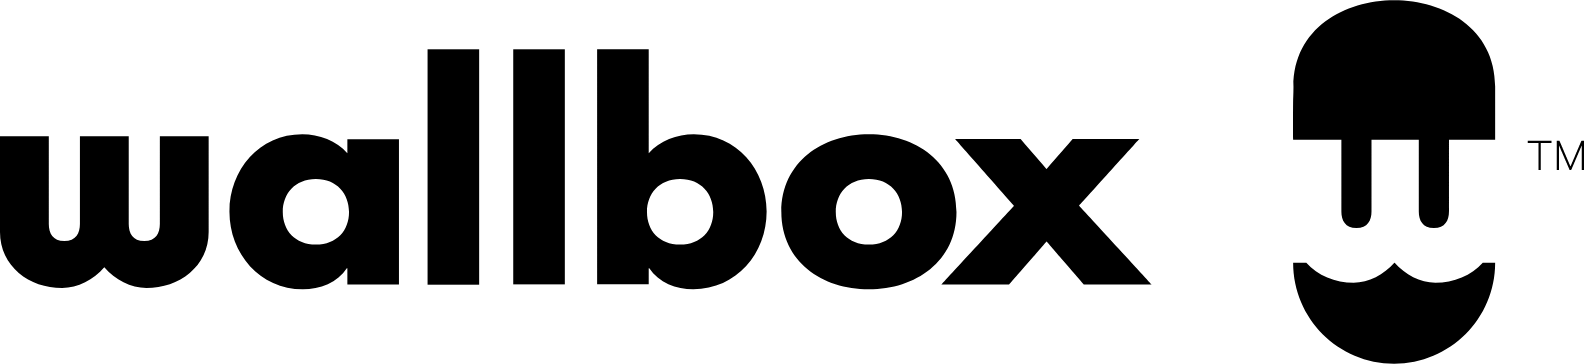 Wallbox logo large (transparent PNG)